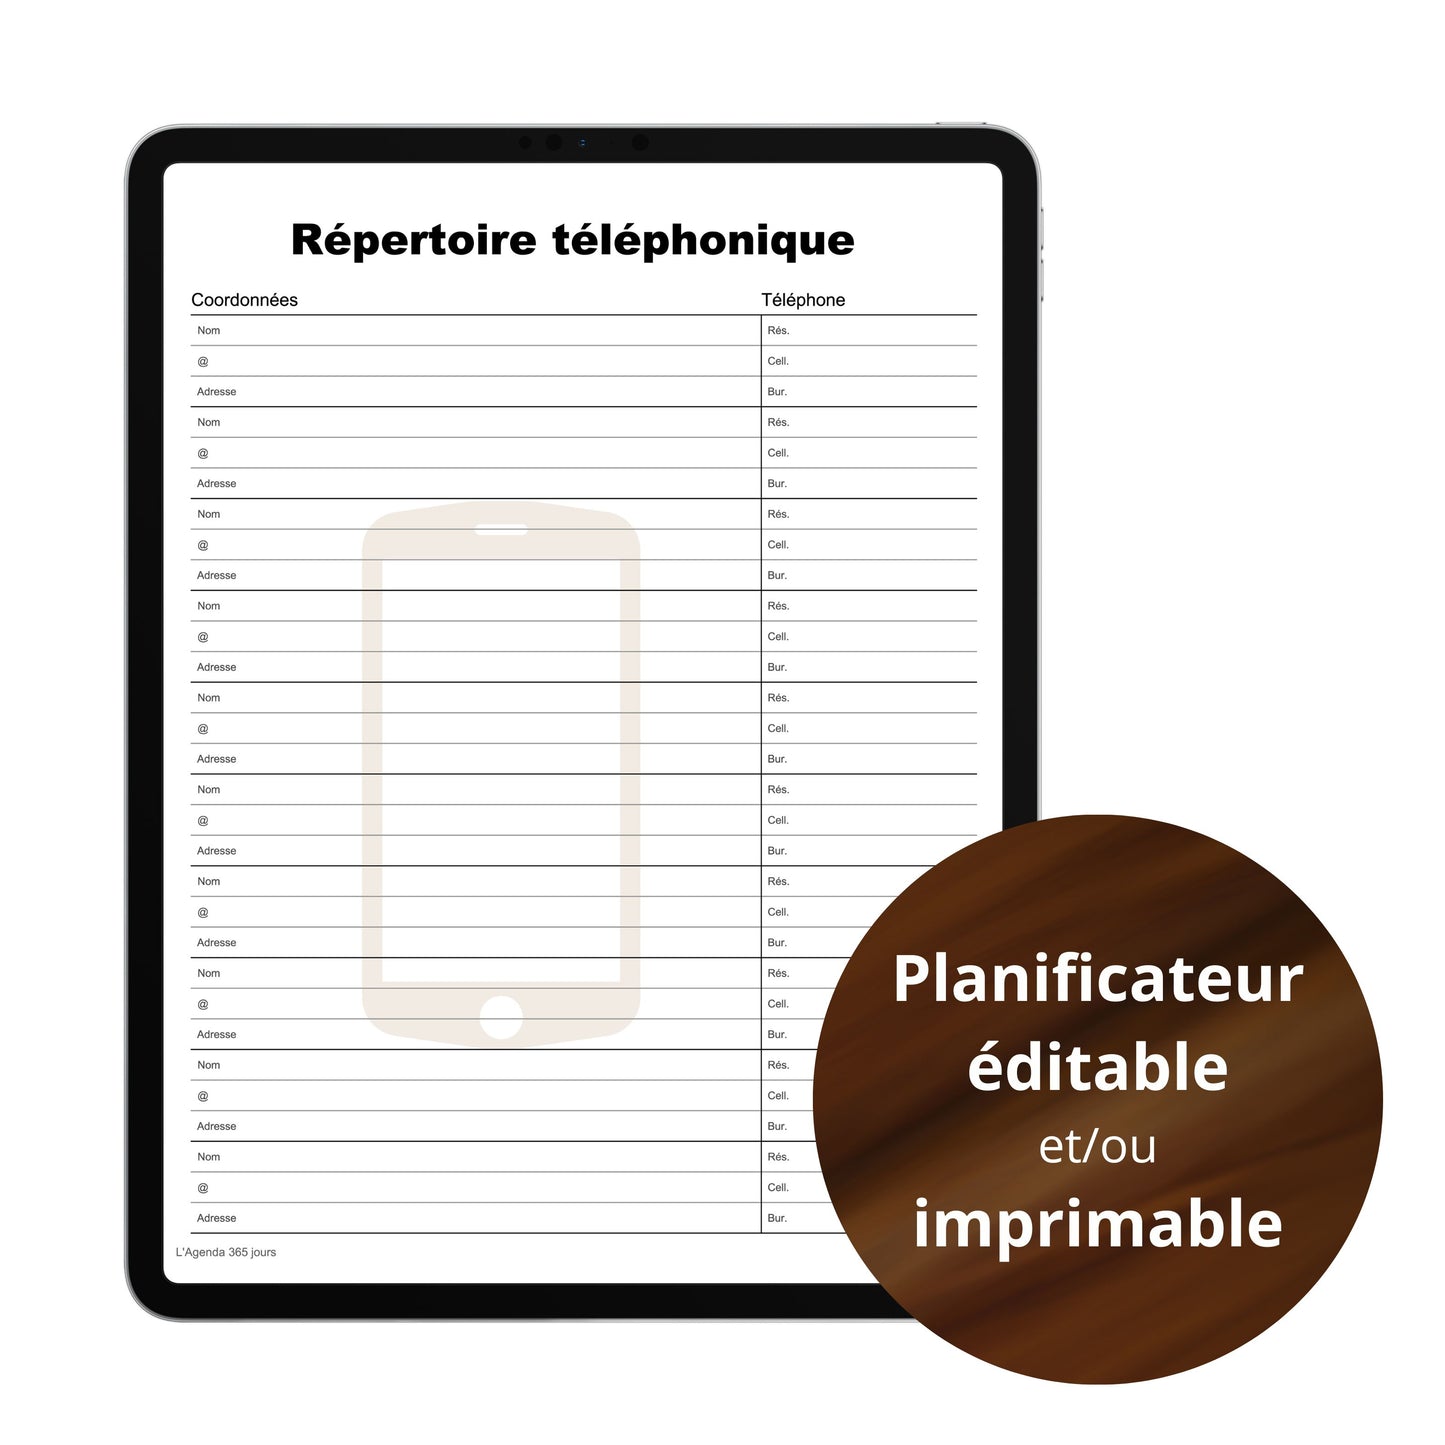 Planificateur - Répertoire téléphonique